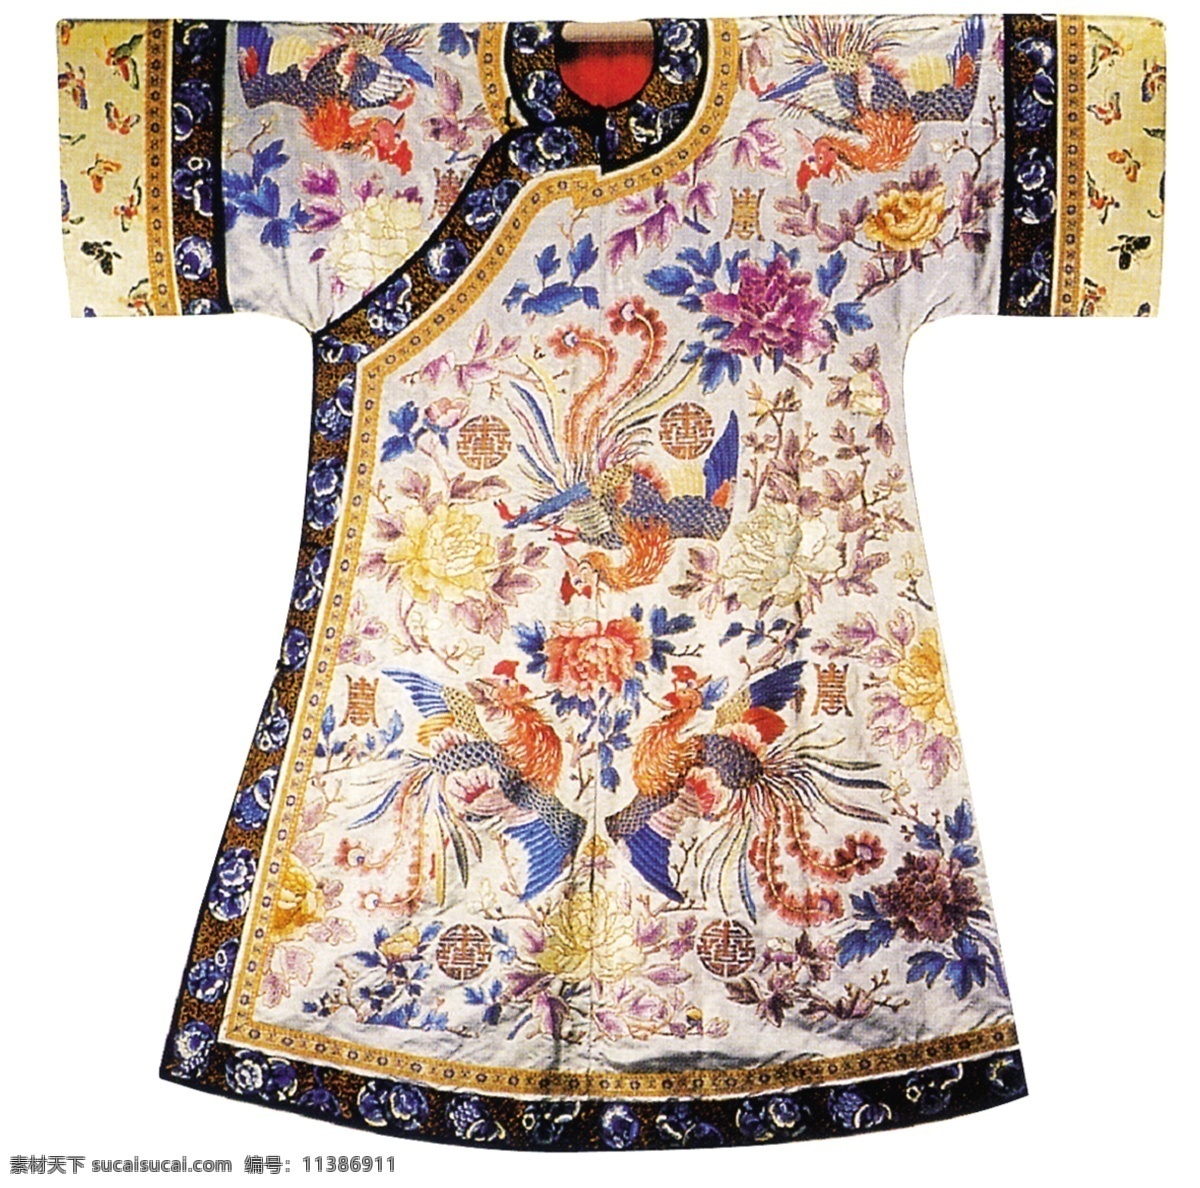 中式 凤凰 长袍 布纹 贴图 中国风 古典 花纹 图案 布纹贴图